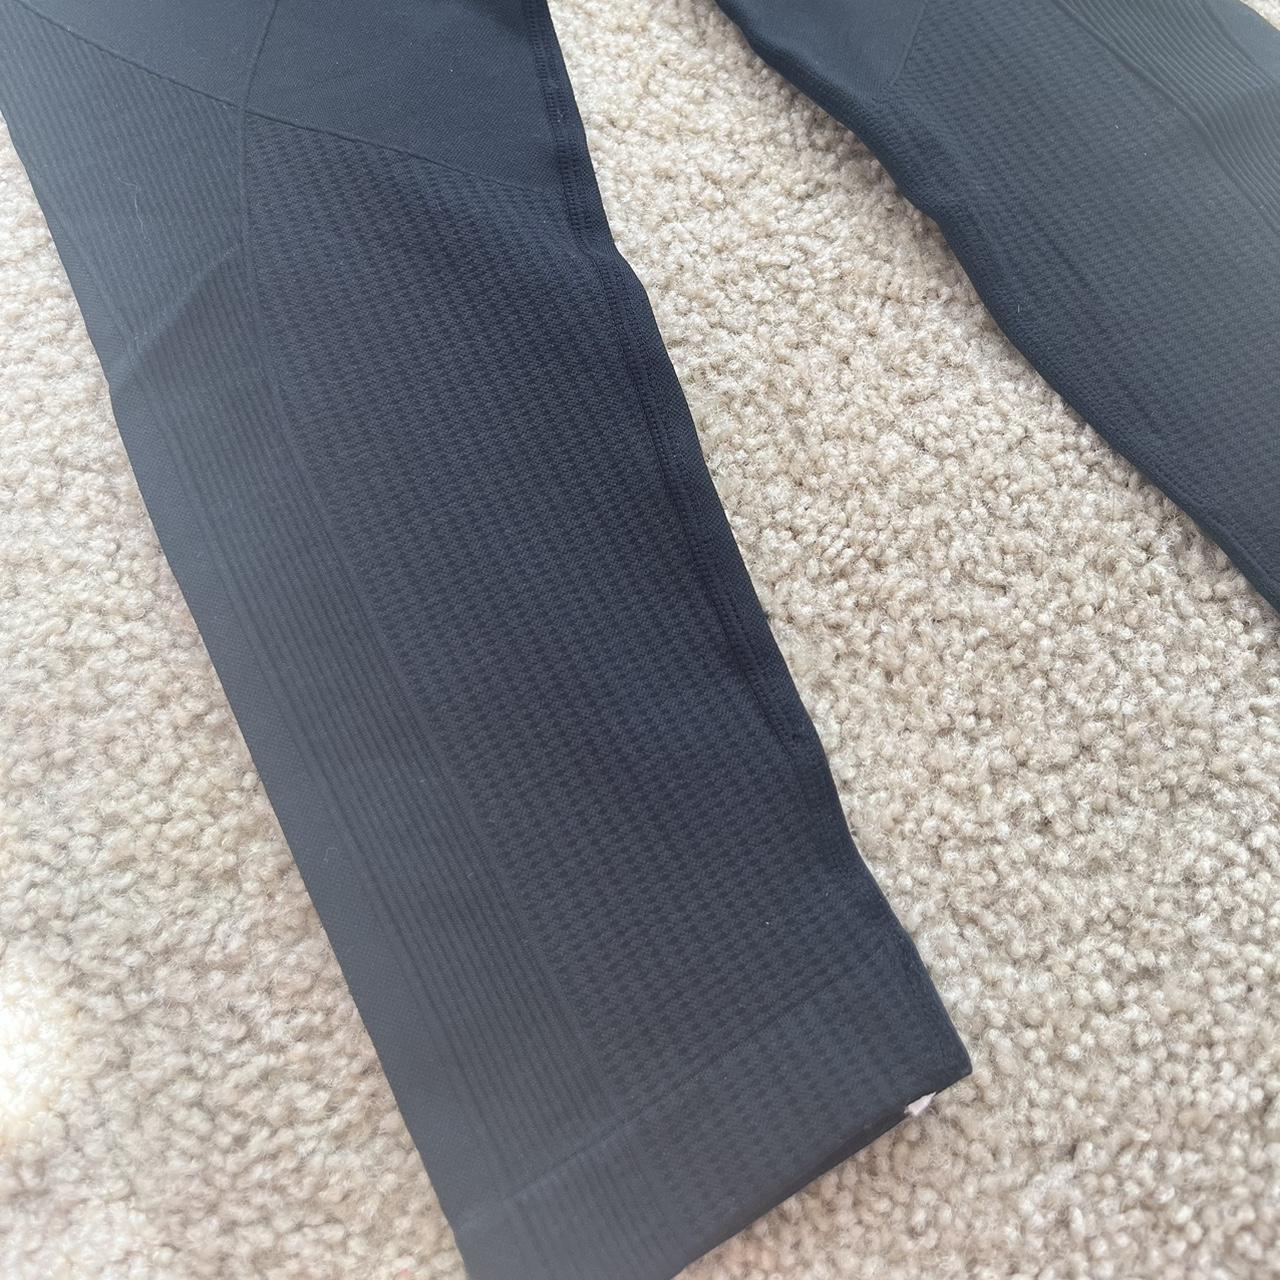 AYBL black leggings, - size S, worn a couple times